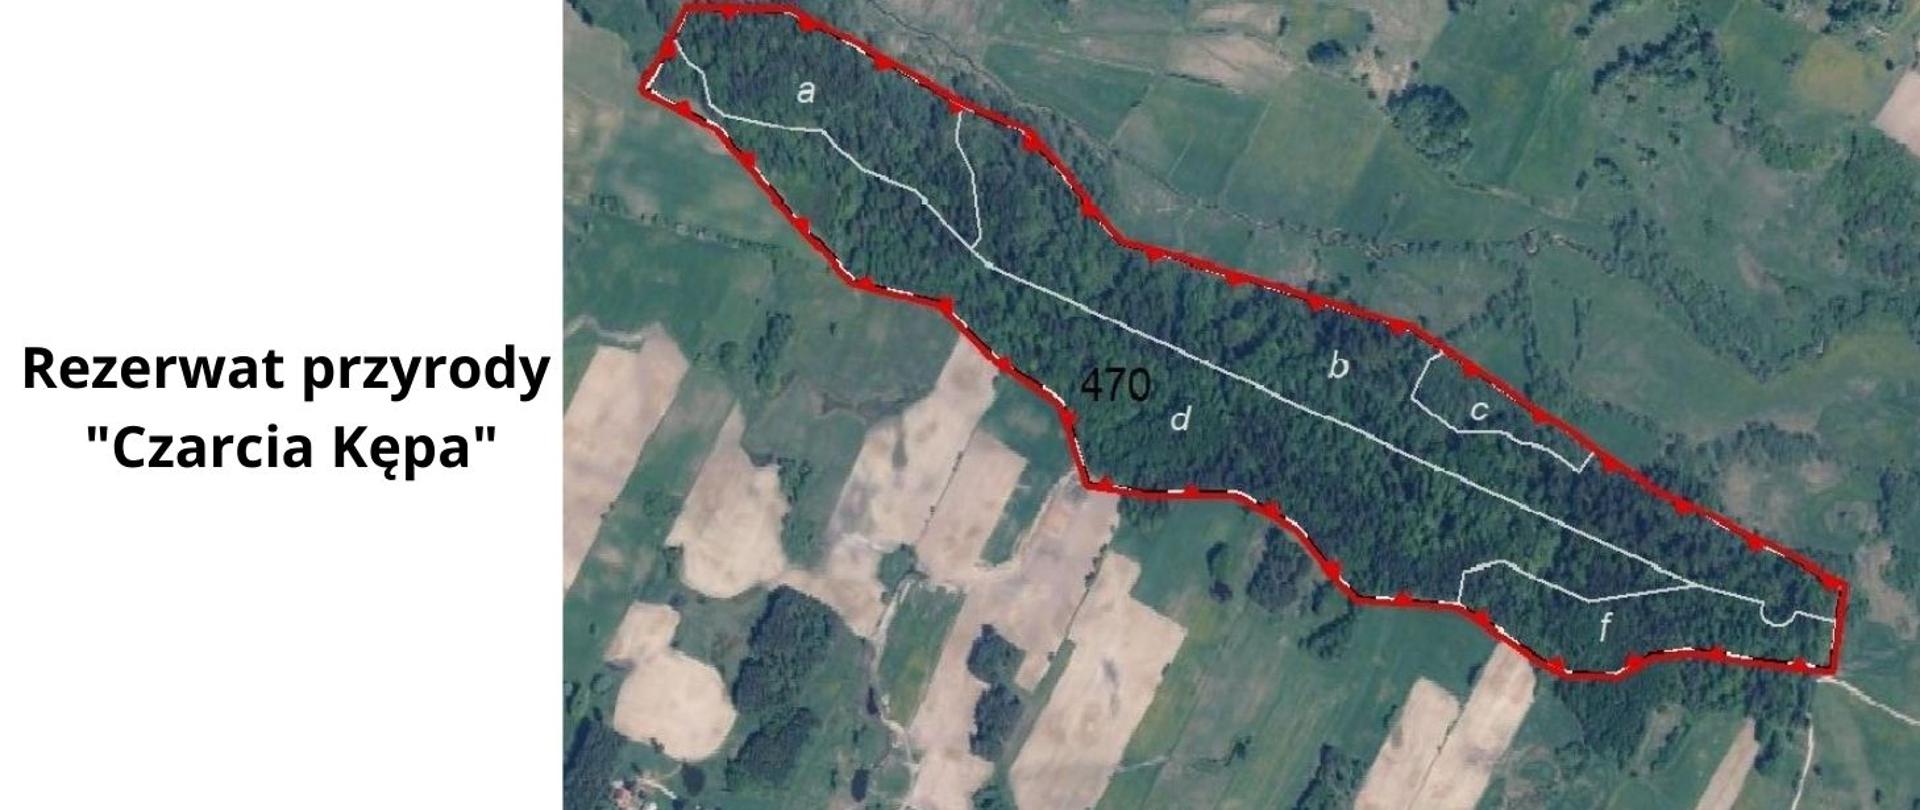 Po lewej stronie czarny napis na białym tle: Rezerwat przyrody Czarcia Kępa, po prawej stronie fragment mapy topograficznej z przebiegiem granicy rezerwatu przyrody Czarcia Kępa